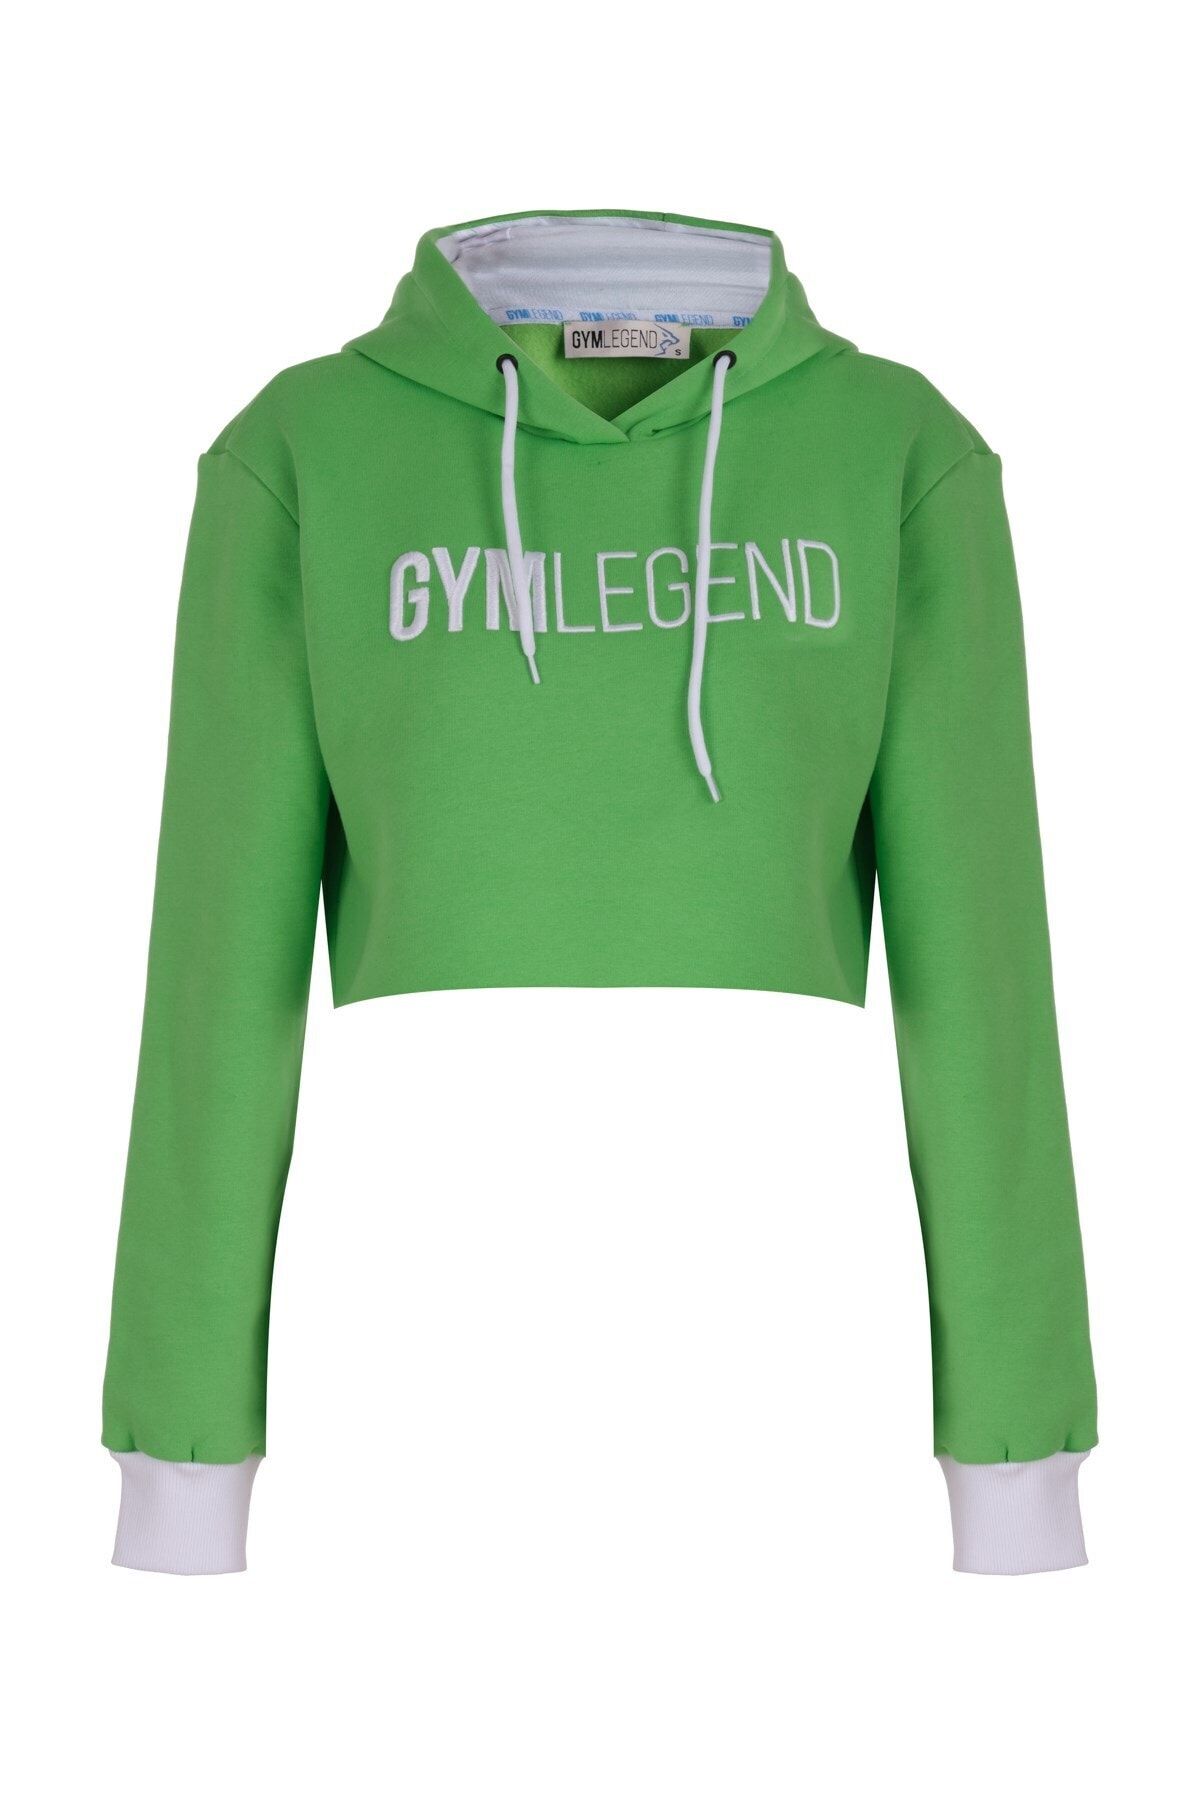 Gymlegend Kadın Fıstık Yeşili Kapüşonlu Kısa Sweatshirt